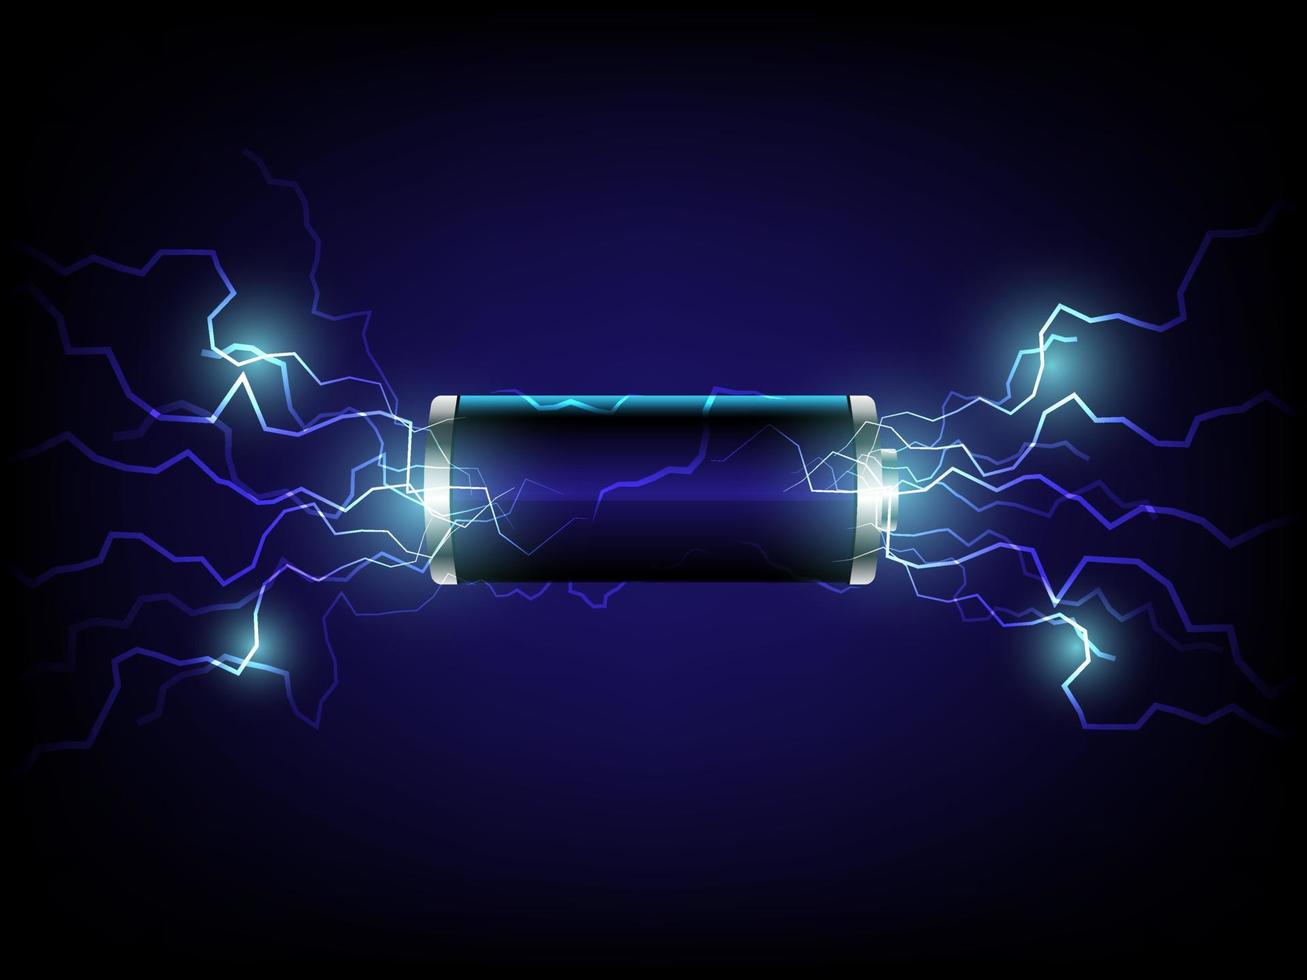 realistisk 3d blixt- batteri vektor design illustration. li-jon aa cell batteri i mörk blå bakgrund. design för annons, baner i elektricitet energi och teknologi.